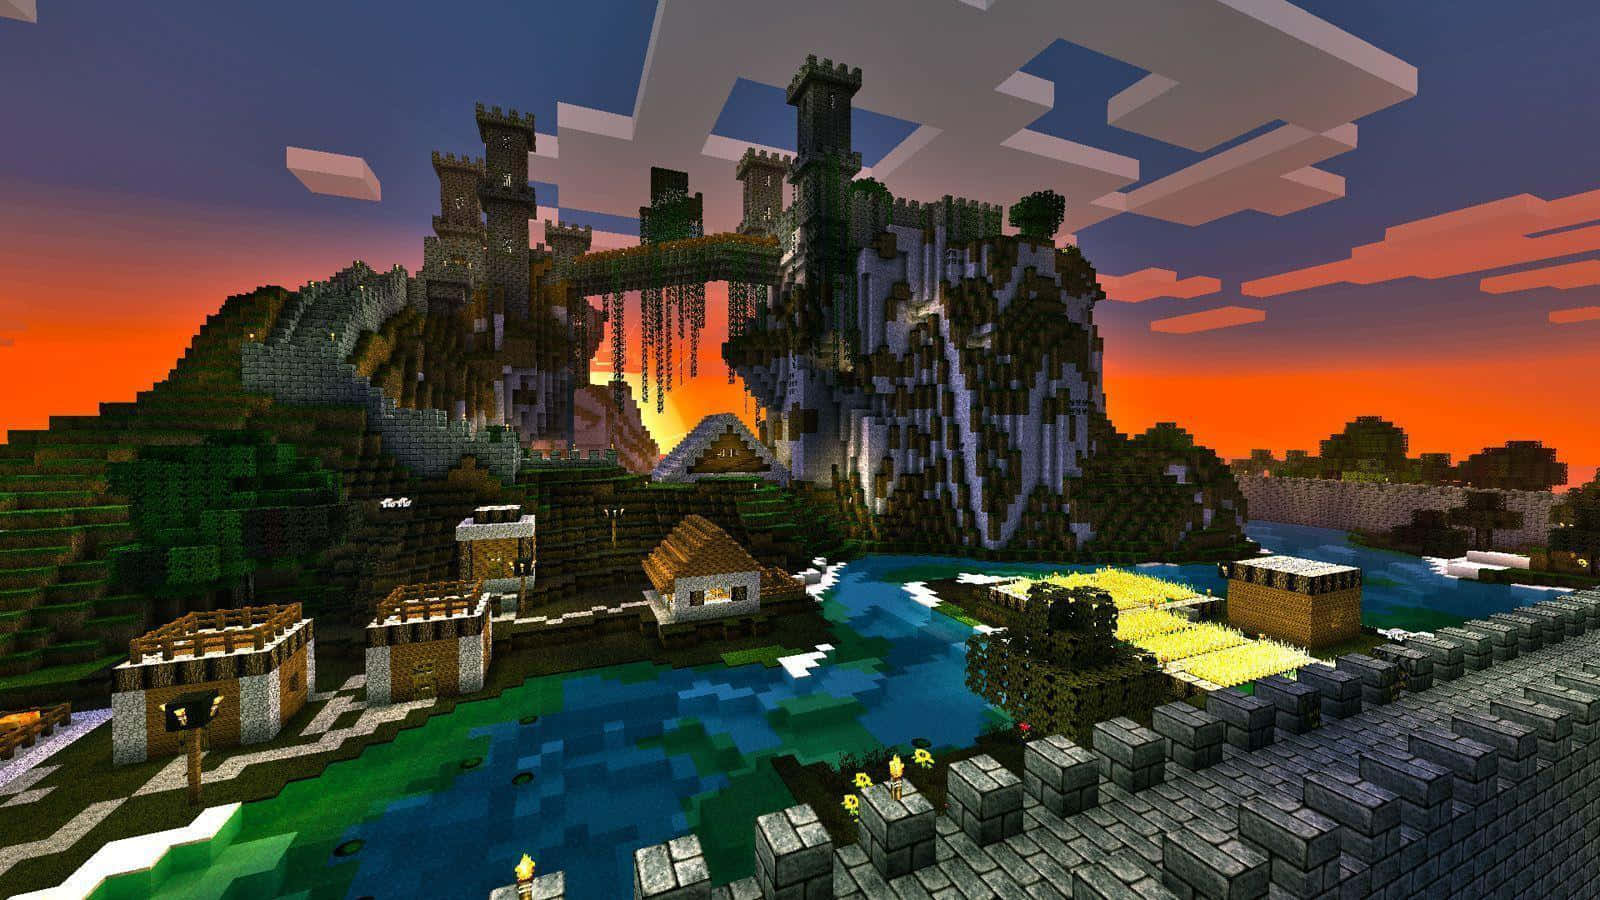 Unavista Impresionante De Una Casa Moderna De Minecraft Meticulosamente Construida